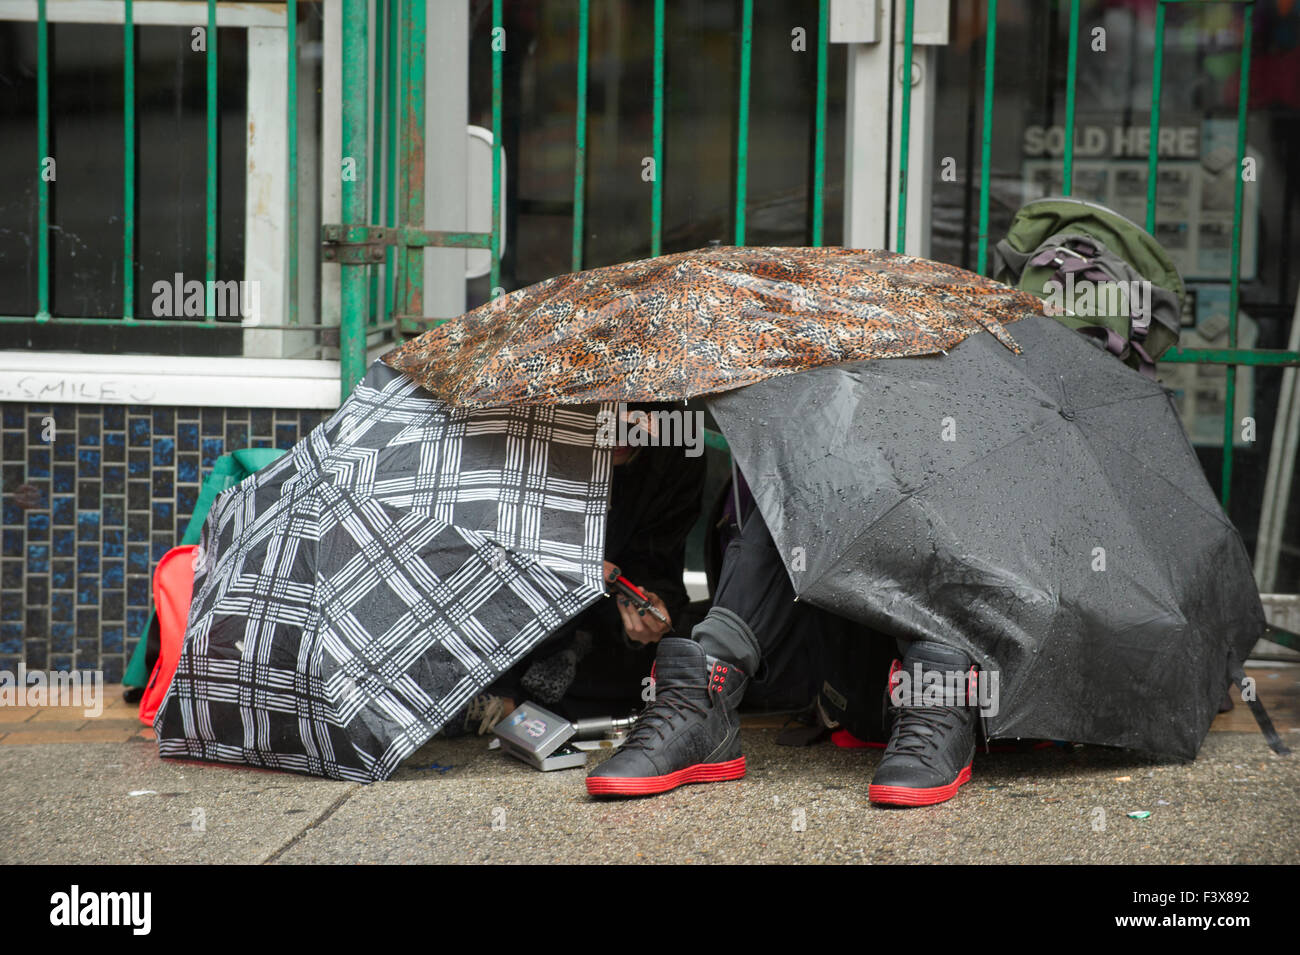 Menschen unter einem Baldachin von Regenschirmen versuchen, bleiben trocken, Hastings Street, Vancouver, Britisch-Kolumbien Stockfoto